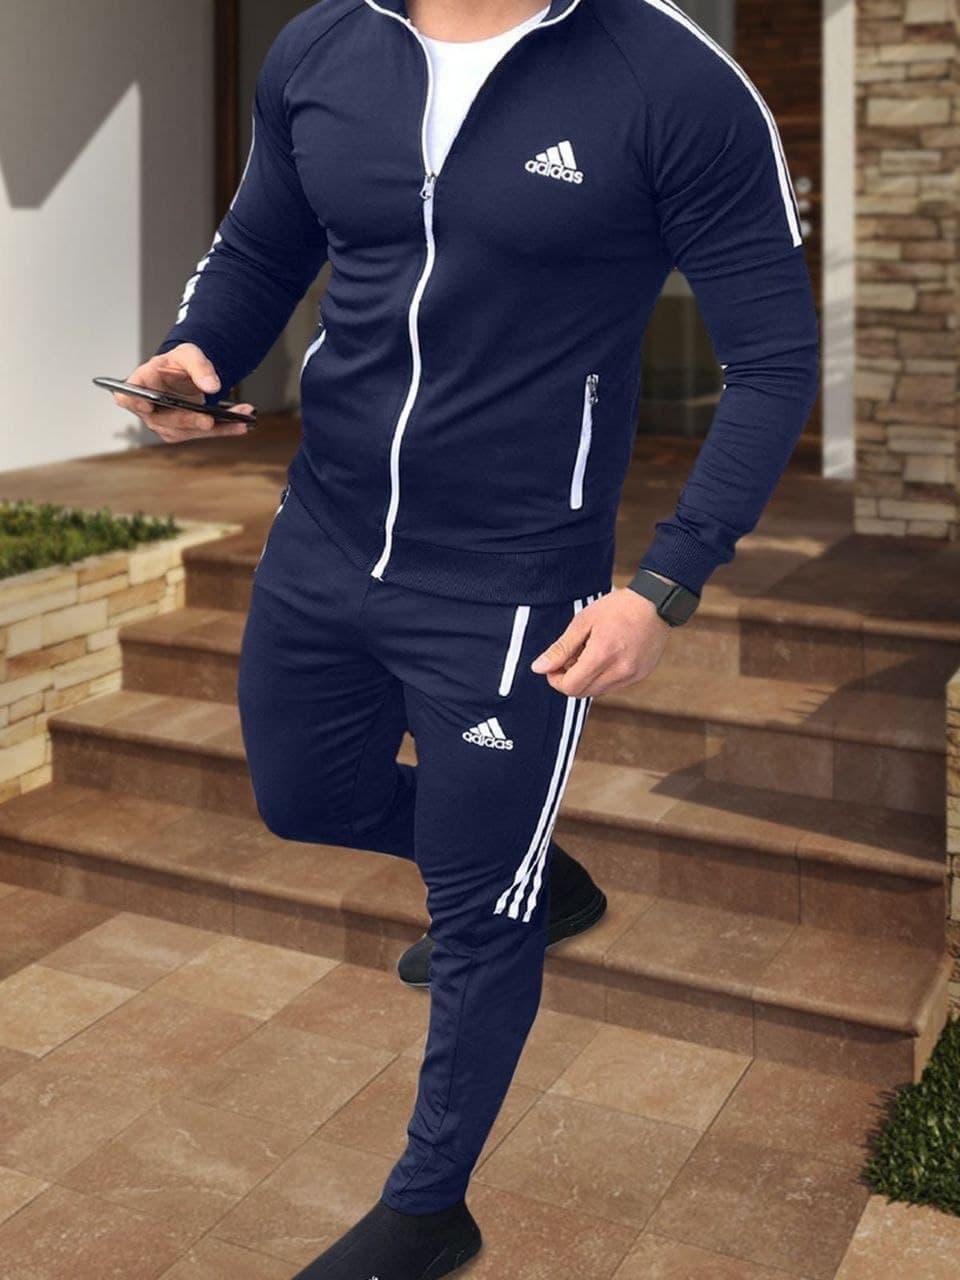 Спортивный костюм Adidas RUN мужской осенний весенний темно-синий | Комплект Кофта + Штаны Адидас ТОП качества